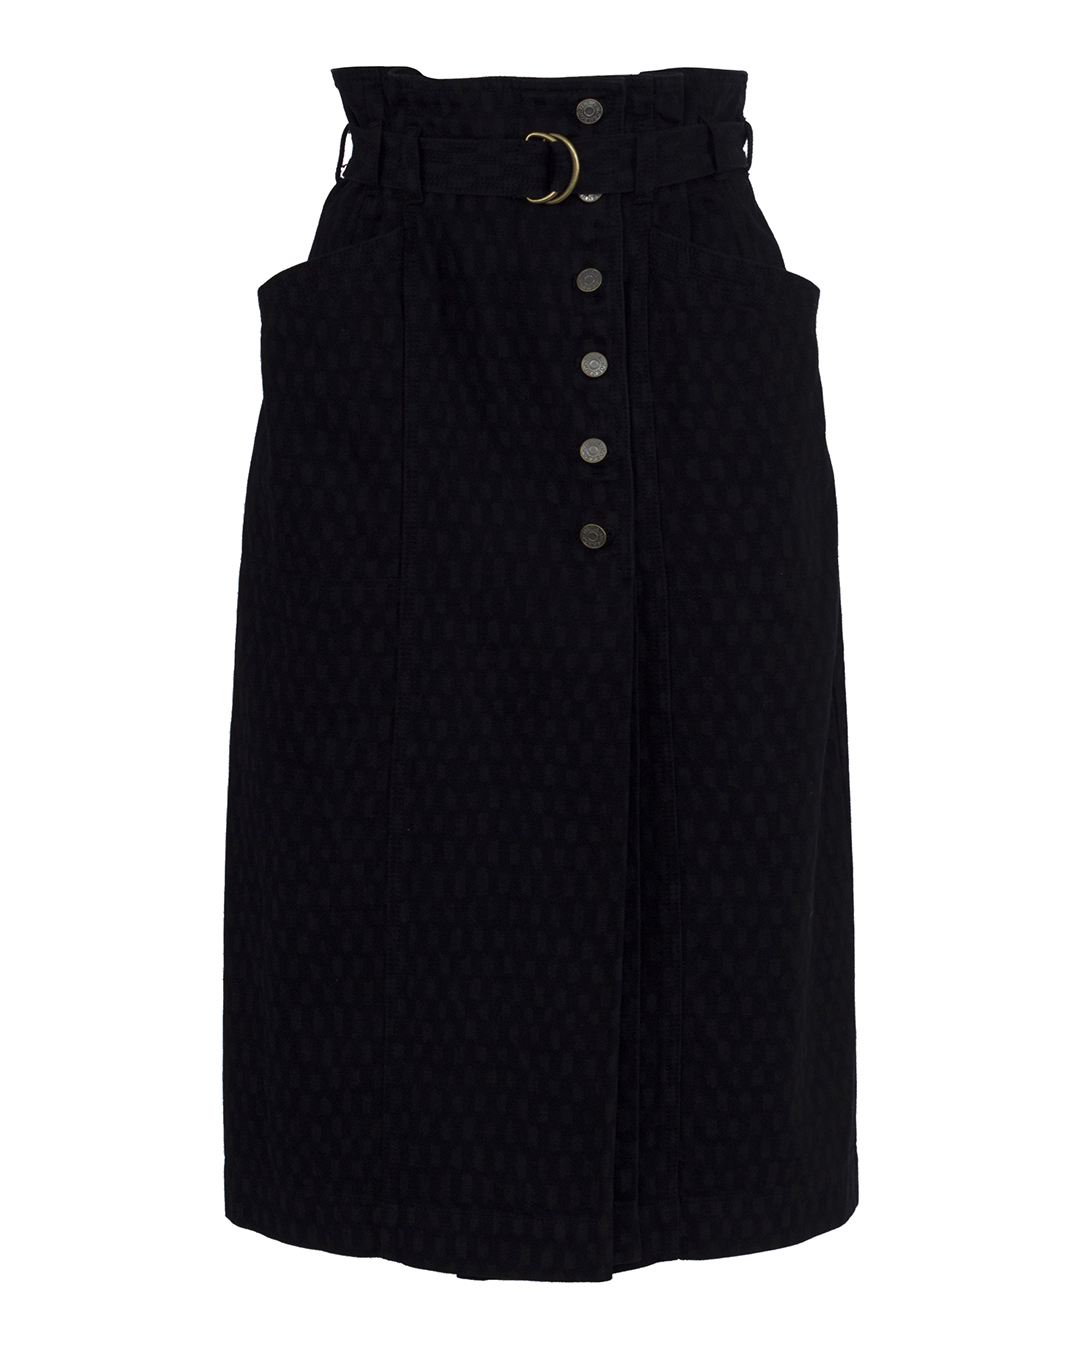 юбка ULLA JOHNSON PS220300 черный 4, размер 4 - фото 1